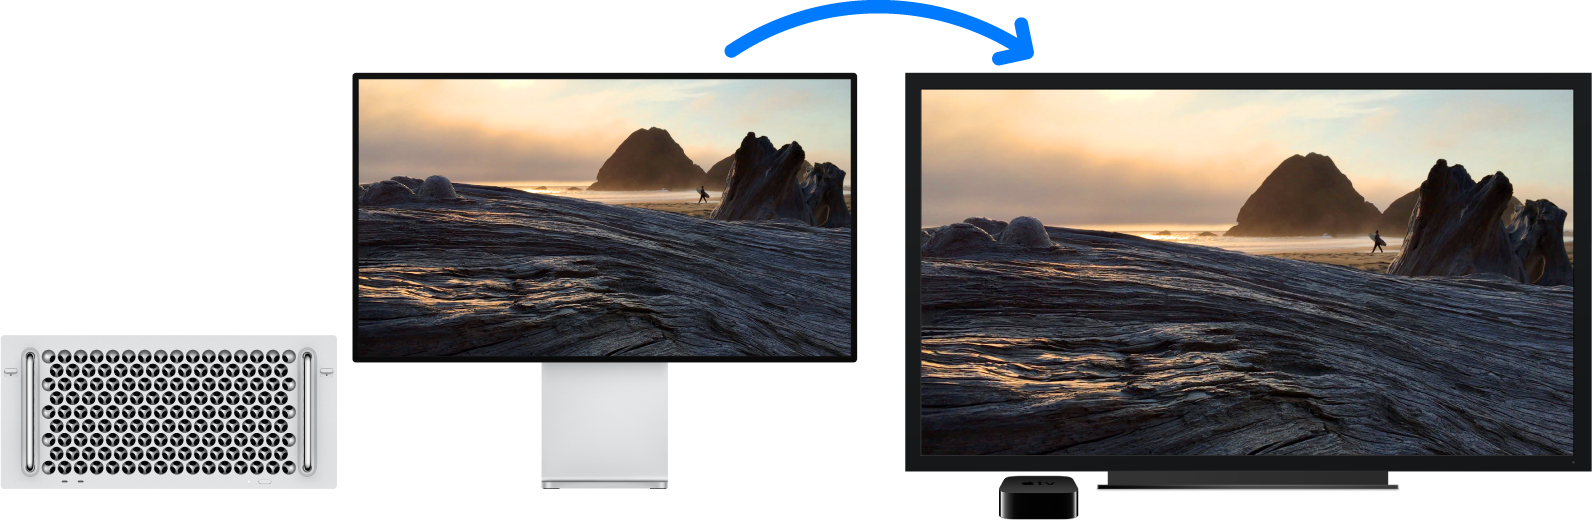 Een Mac Pro waarvan de inhoud via een Apple TV wordt weergegeven op een grote HD-tv.